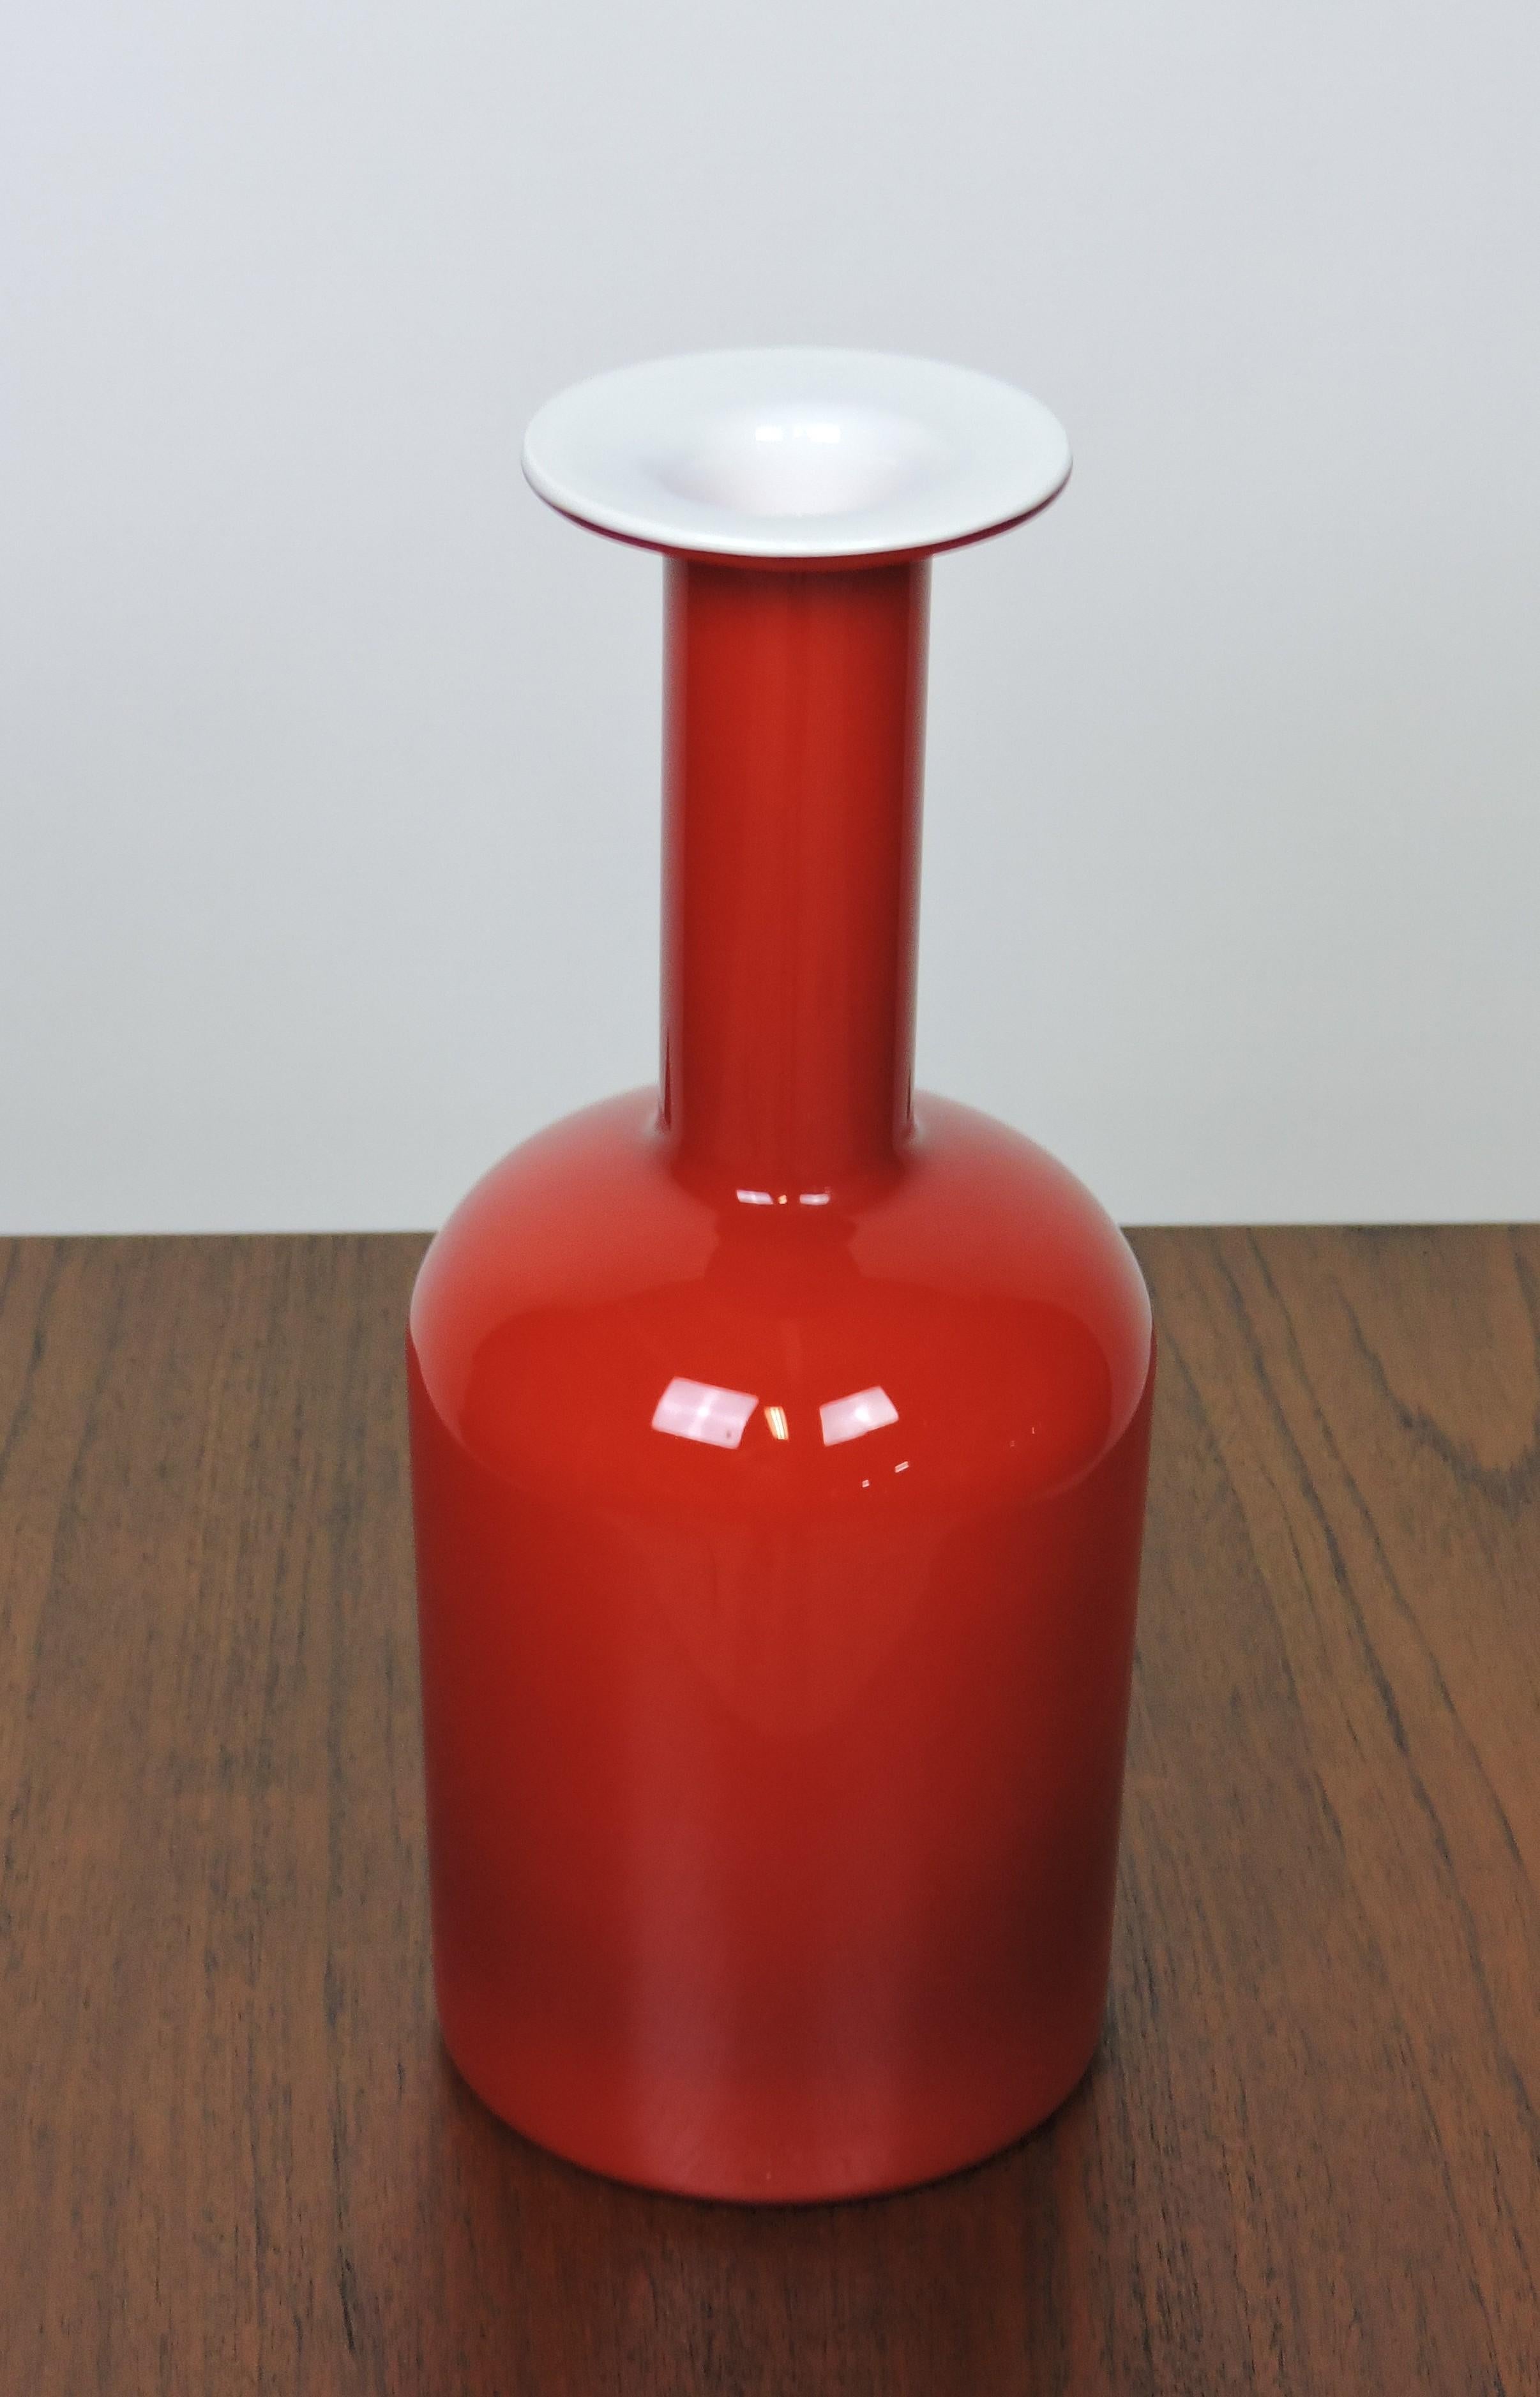 Große, ikonische Gulvase aus Glas, entworfen von Otto Brauer und hergestellt in Dänemark von Holmegaard. Diese Vase ist mittelgroß und hat eine rote Außenseite mit einer weißen Innenseite. Das letzte Bild zeigt sie mit einer schwedischen